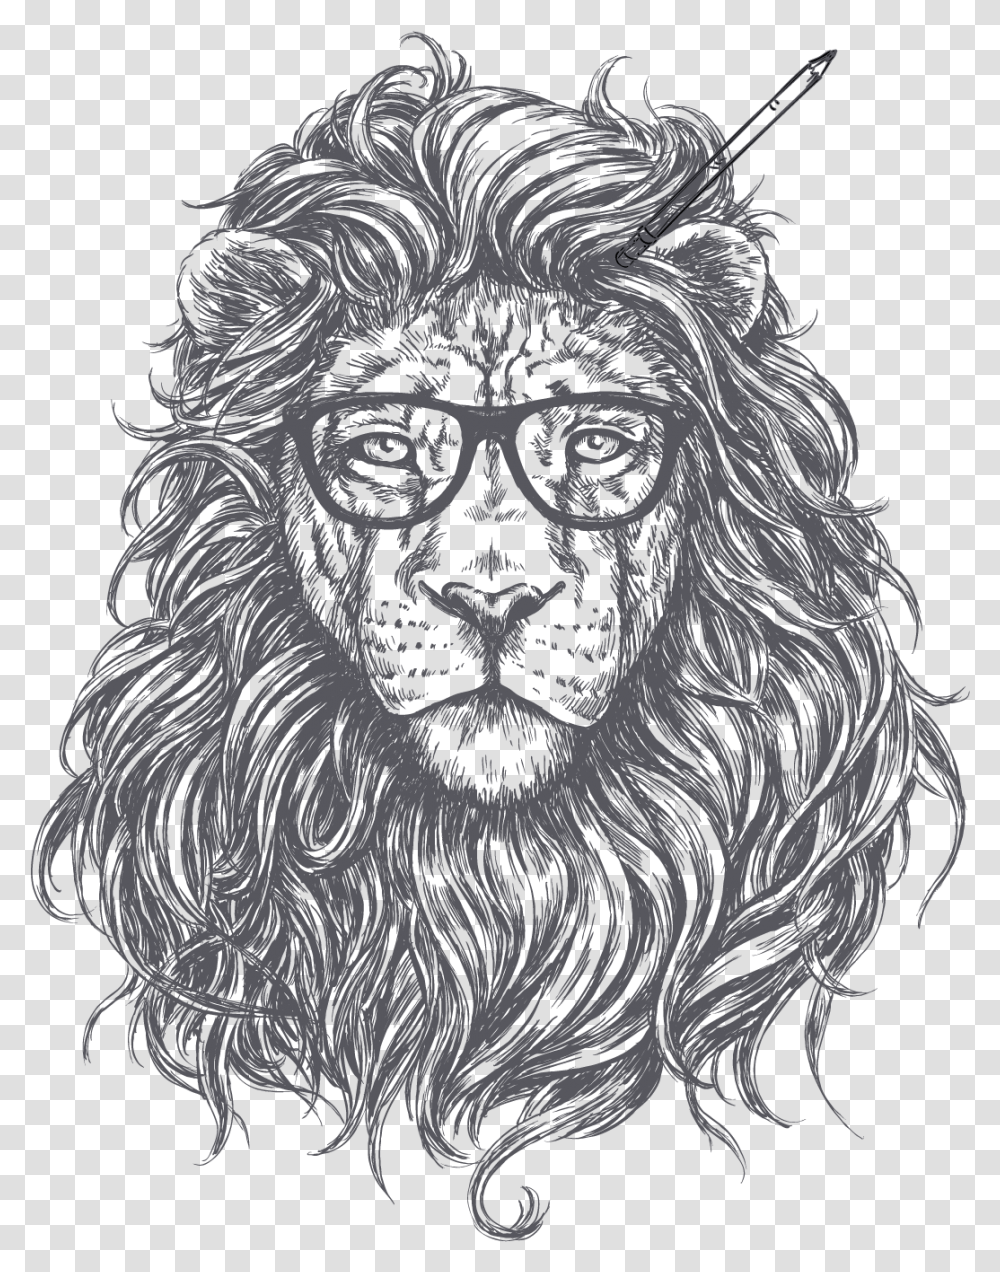 Download Lion Images Backgrounds Background Lion Logo, Wildlife, Mammal, Animal, Tiger Transparent Png